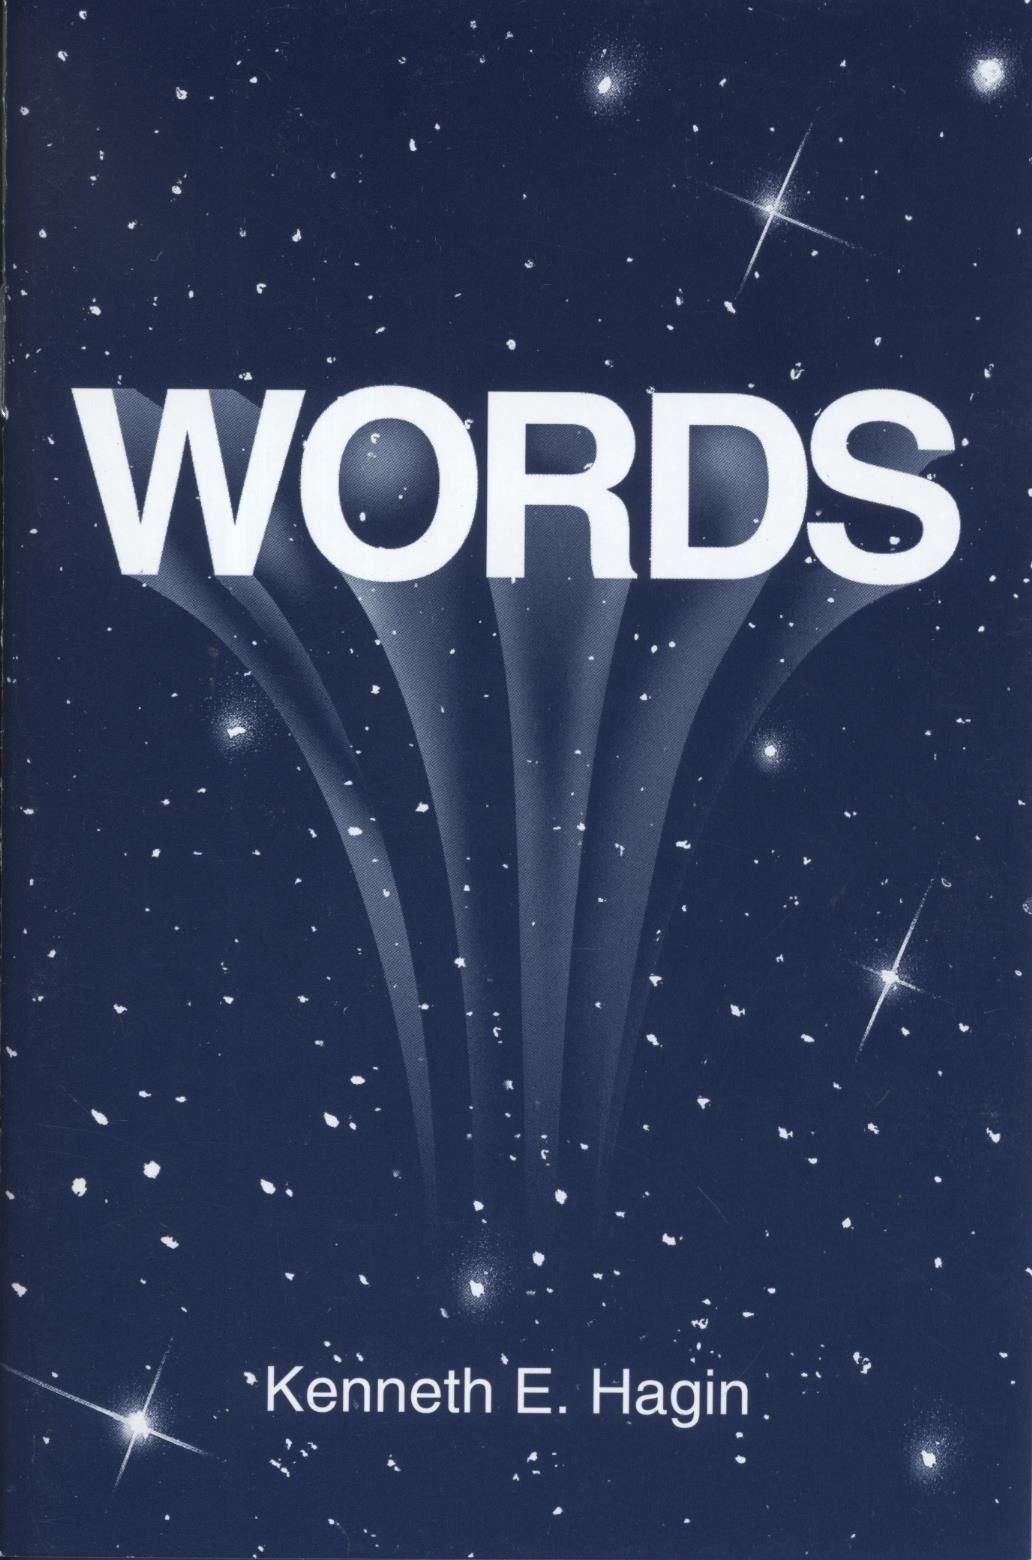 Kenneth E. Hagin: Words